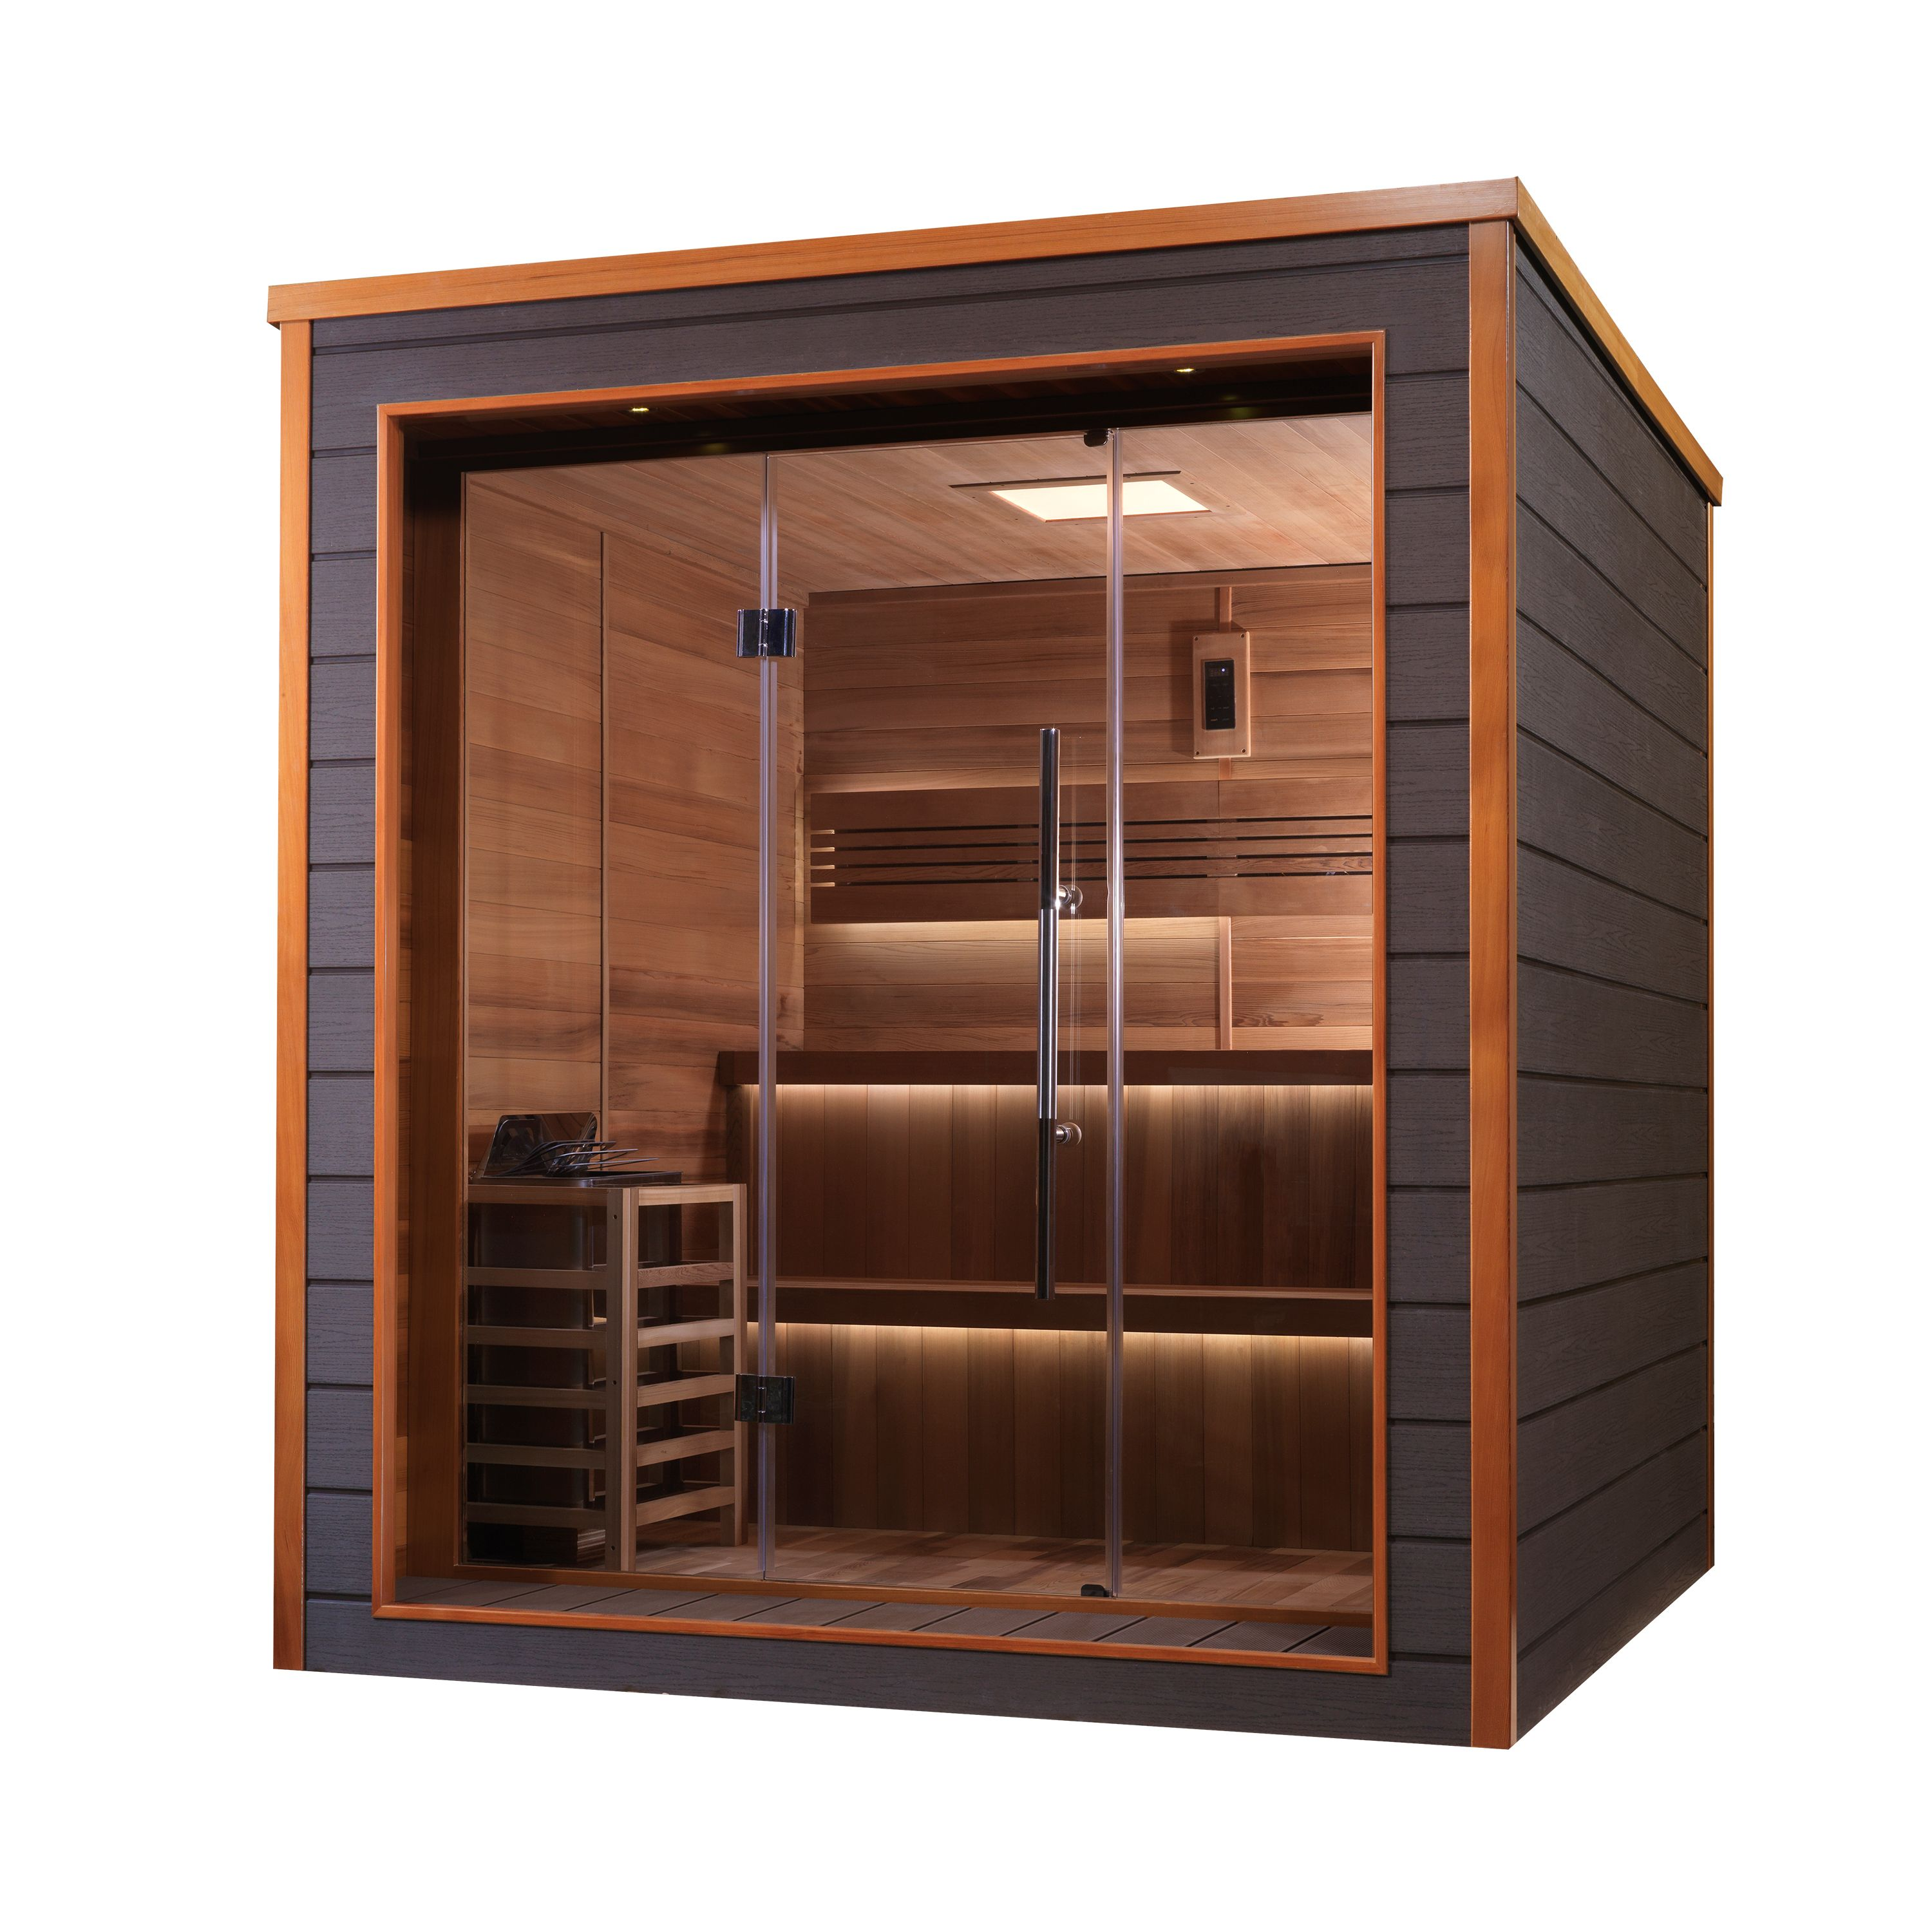 Golden Designs Bergen 6 Person Outdoor-Indoor Traditional Steam Sauna